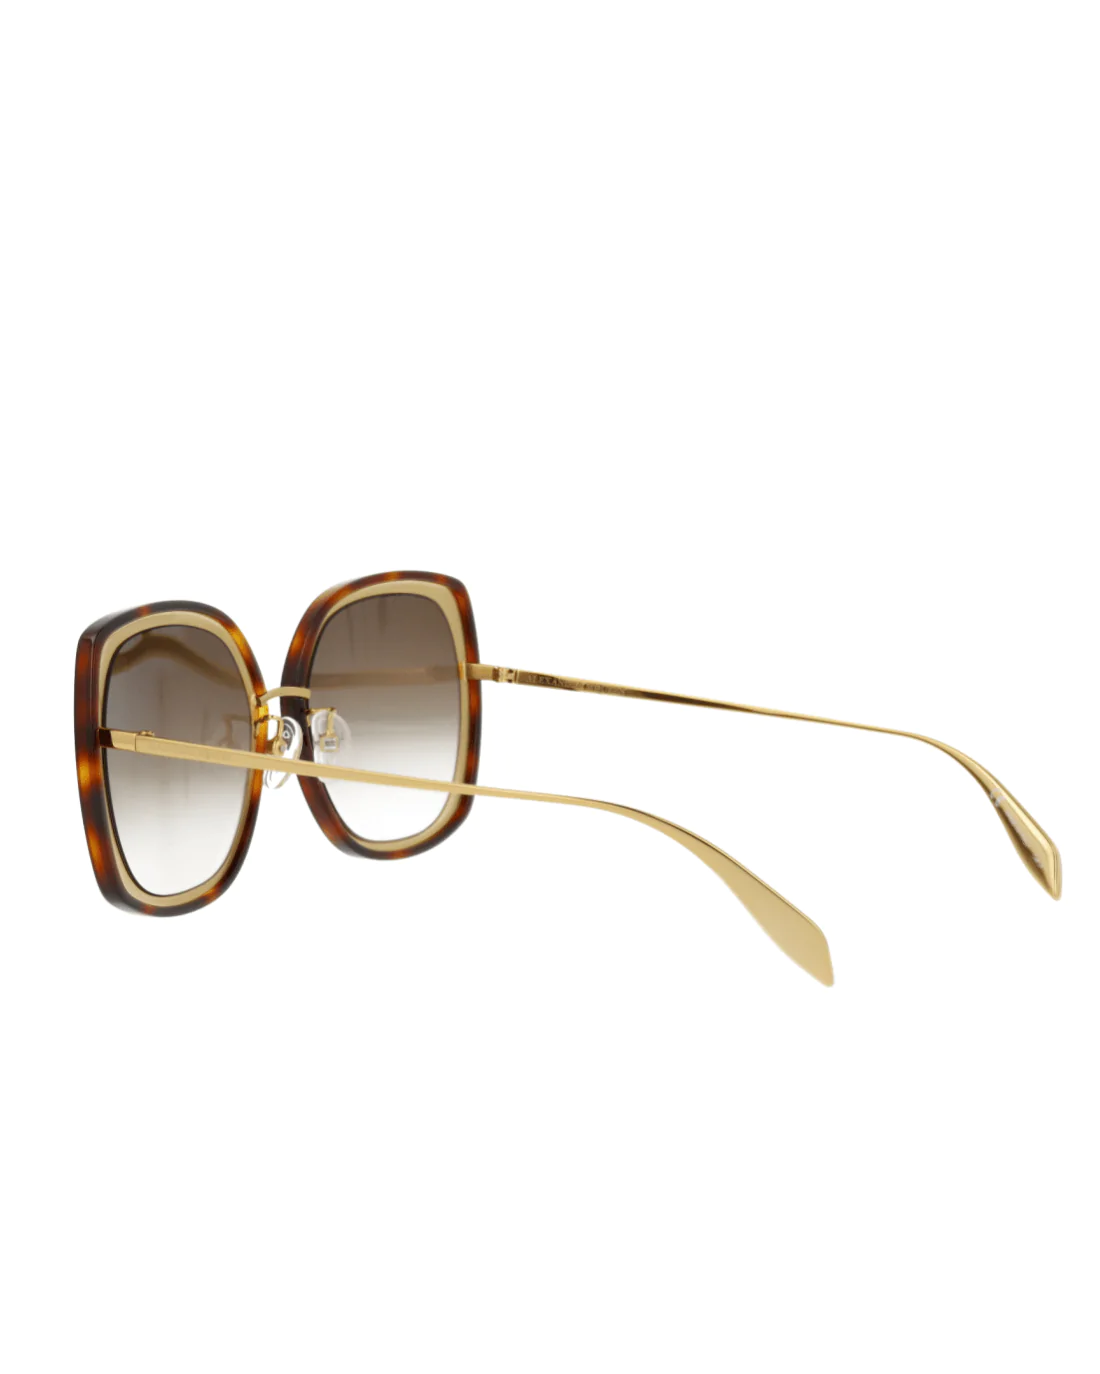 Alexander McQueen AM0151S 003 Gold Sunglasses